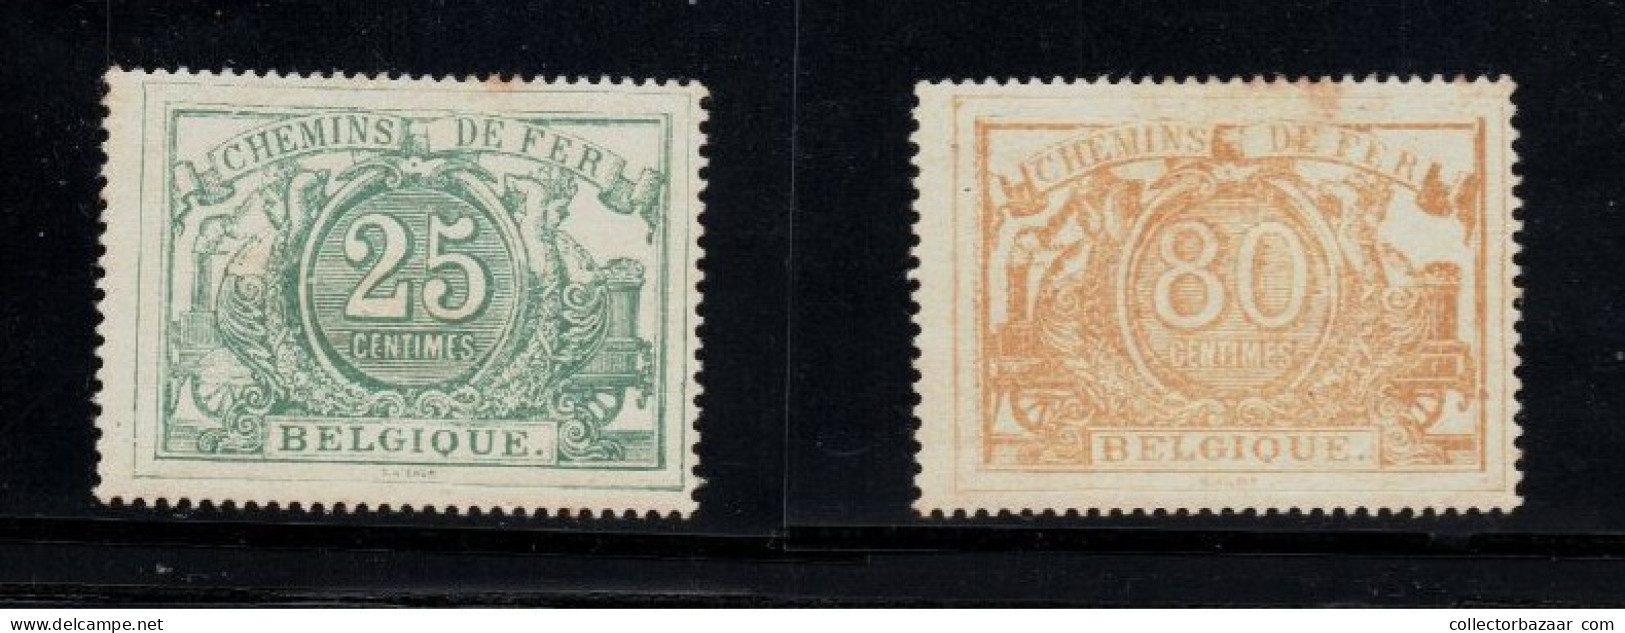 Belgium Belgique Mint Reprints Or Fakes ? Please Decide You Railway Railroad Stamps Chemins De Fer - Postfris